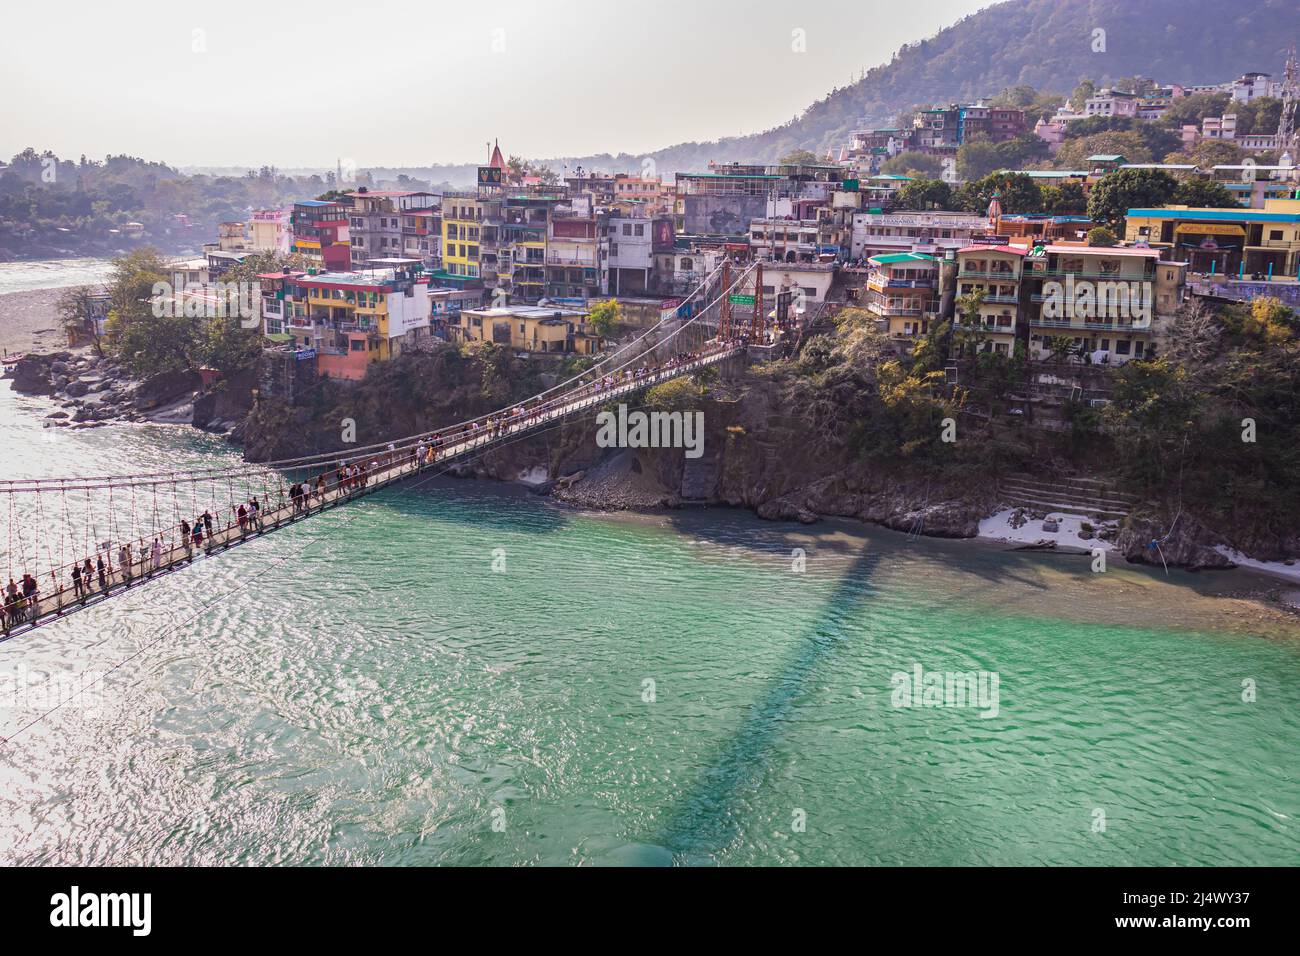 lakshman jhula pont en suspension de fer au-dessus de la rivière ganges à partir d'un angle plat image est prise à rishikesh uttrakhet inde le 15 2022 mars. Banque D'Images